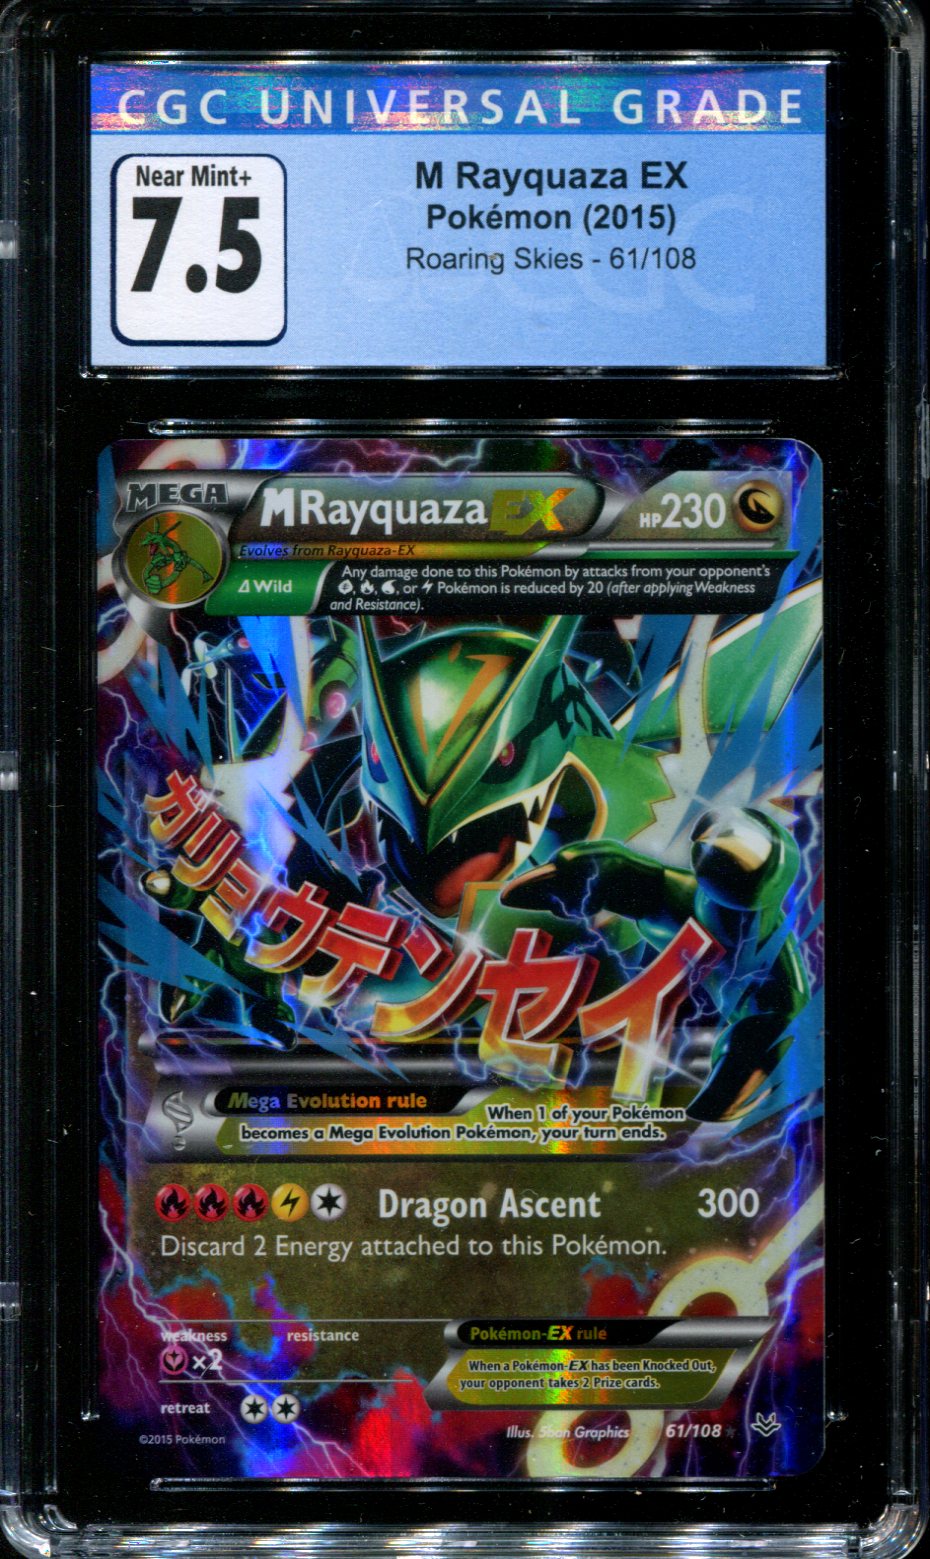 Pokemon - Mega-Rayquaza-EX (61/108) - XY Roaring Skies - Holo